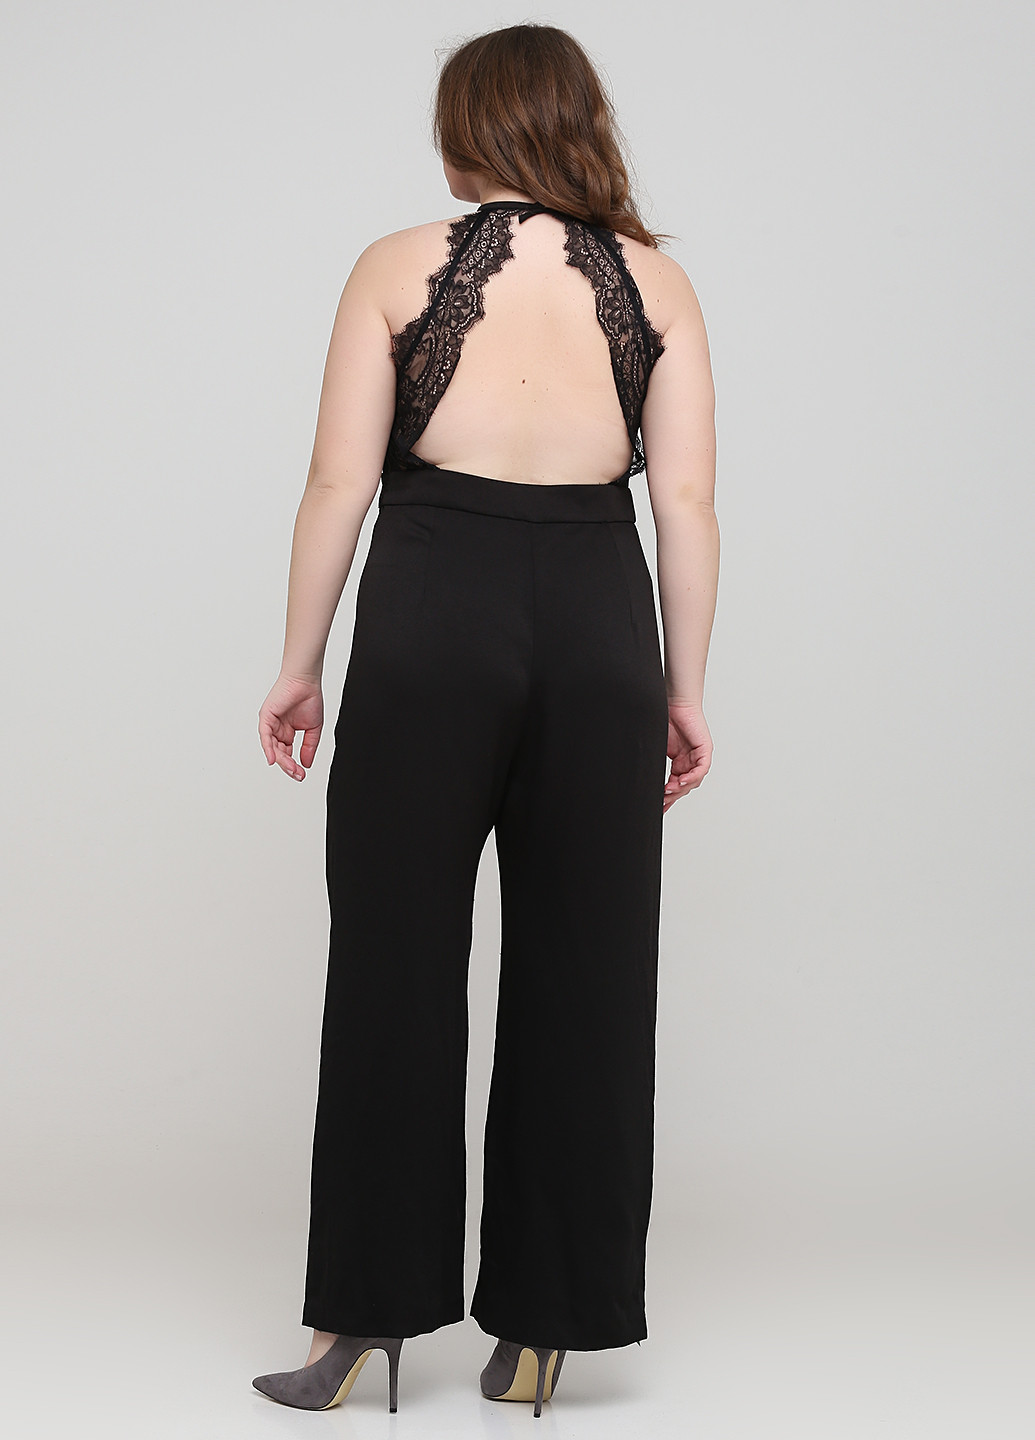 Комбинезон H&M комбинезон-брюки однотонный чёрный вечерний вискоза